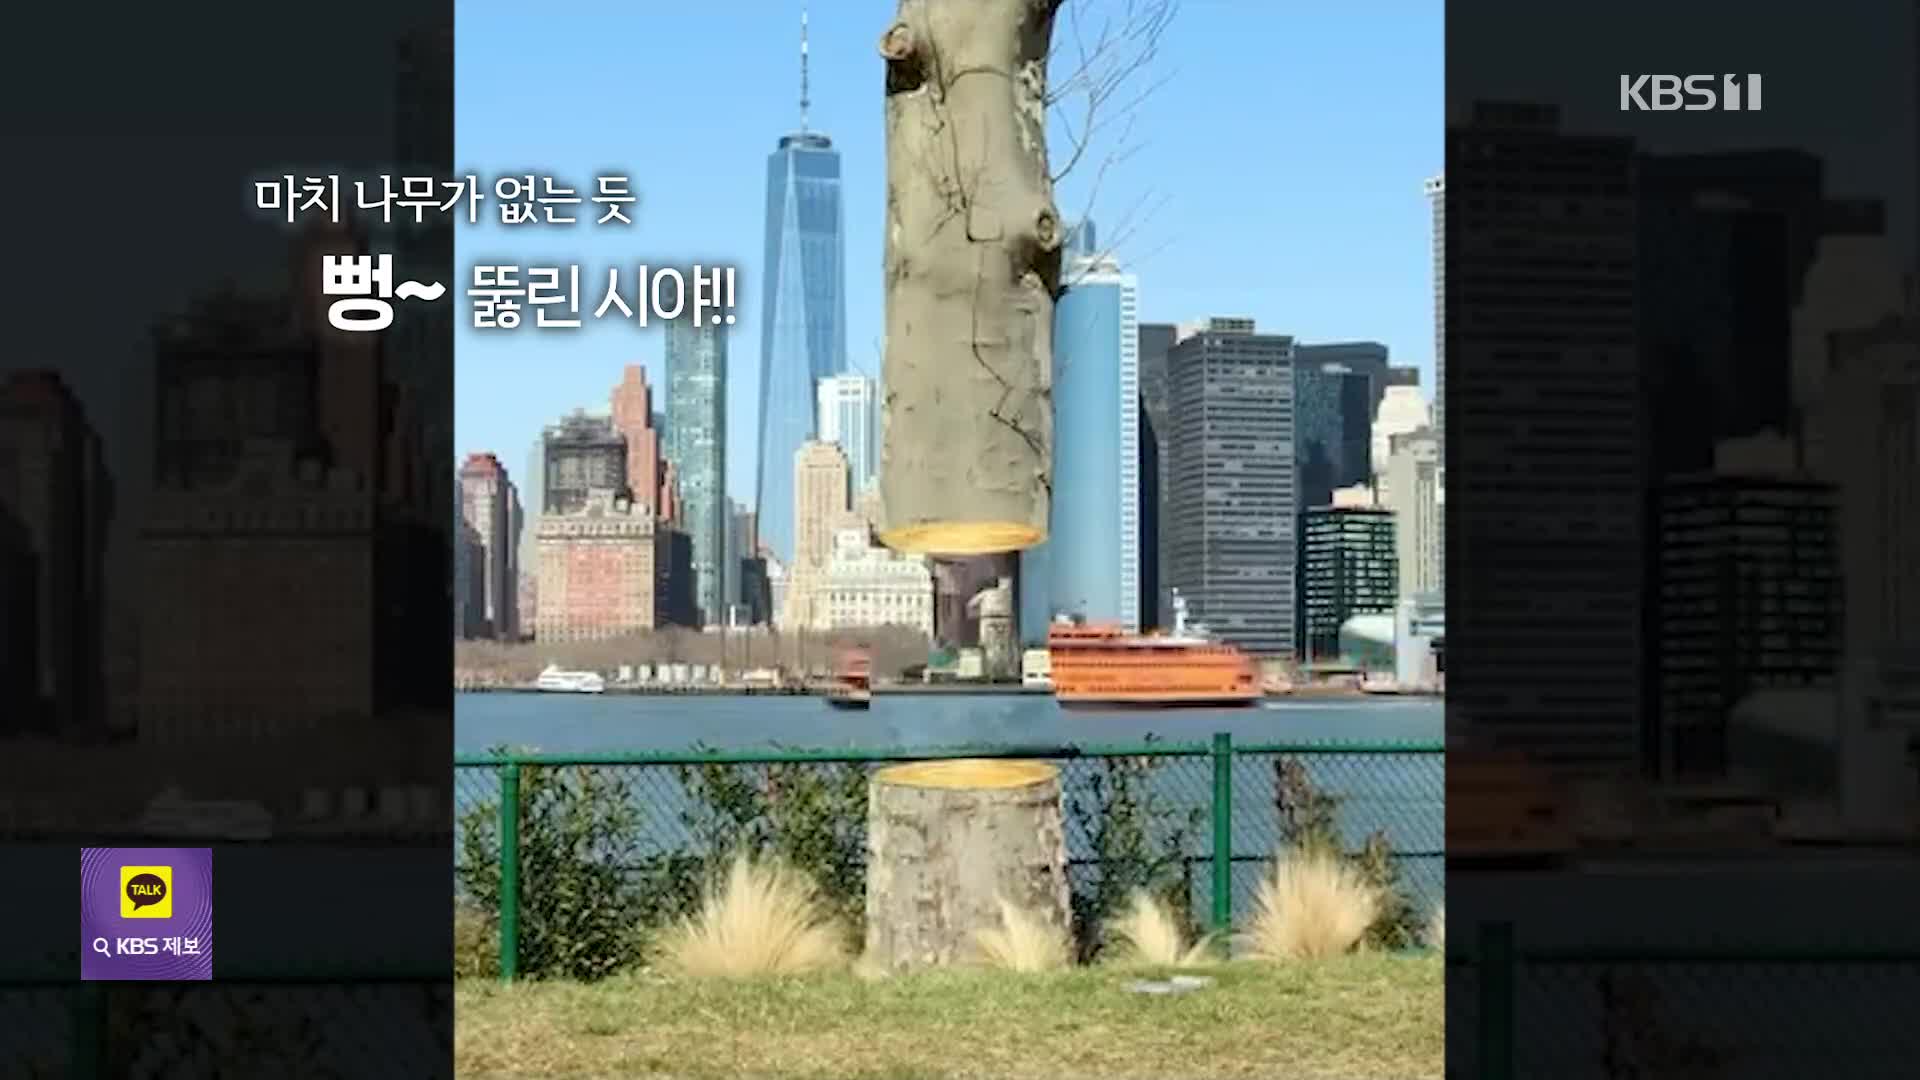 [오늘의 영상] 투시되는 나무?? 정교한 그림이 만든 ‘착시 예술’